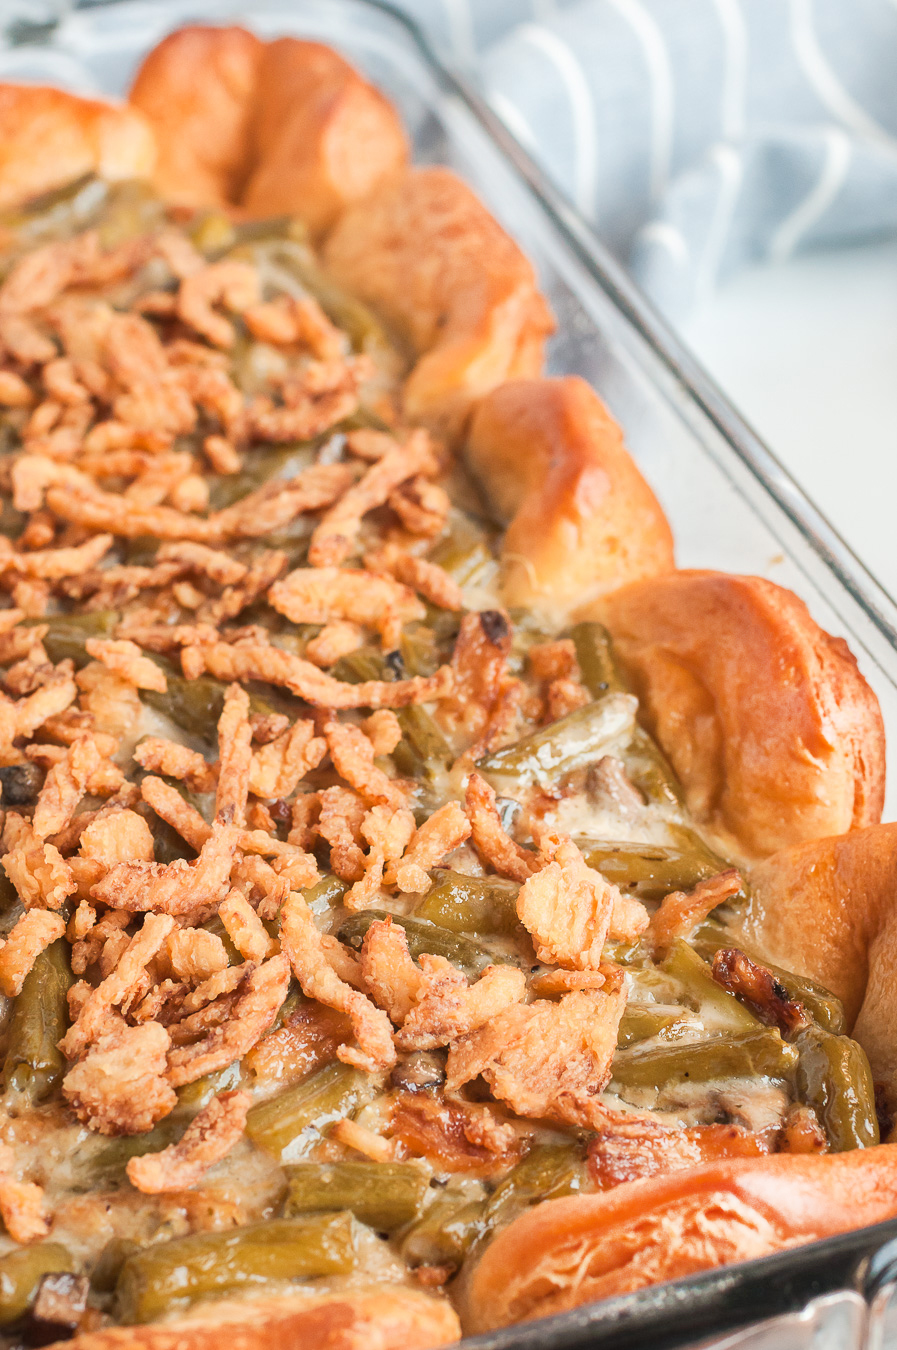 That classic green bean casserole you love, but better.